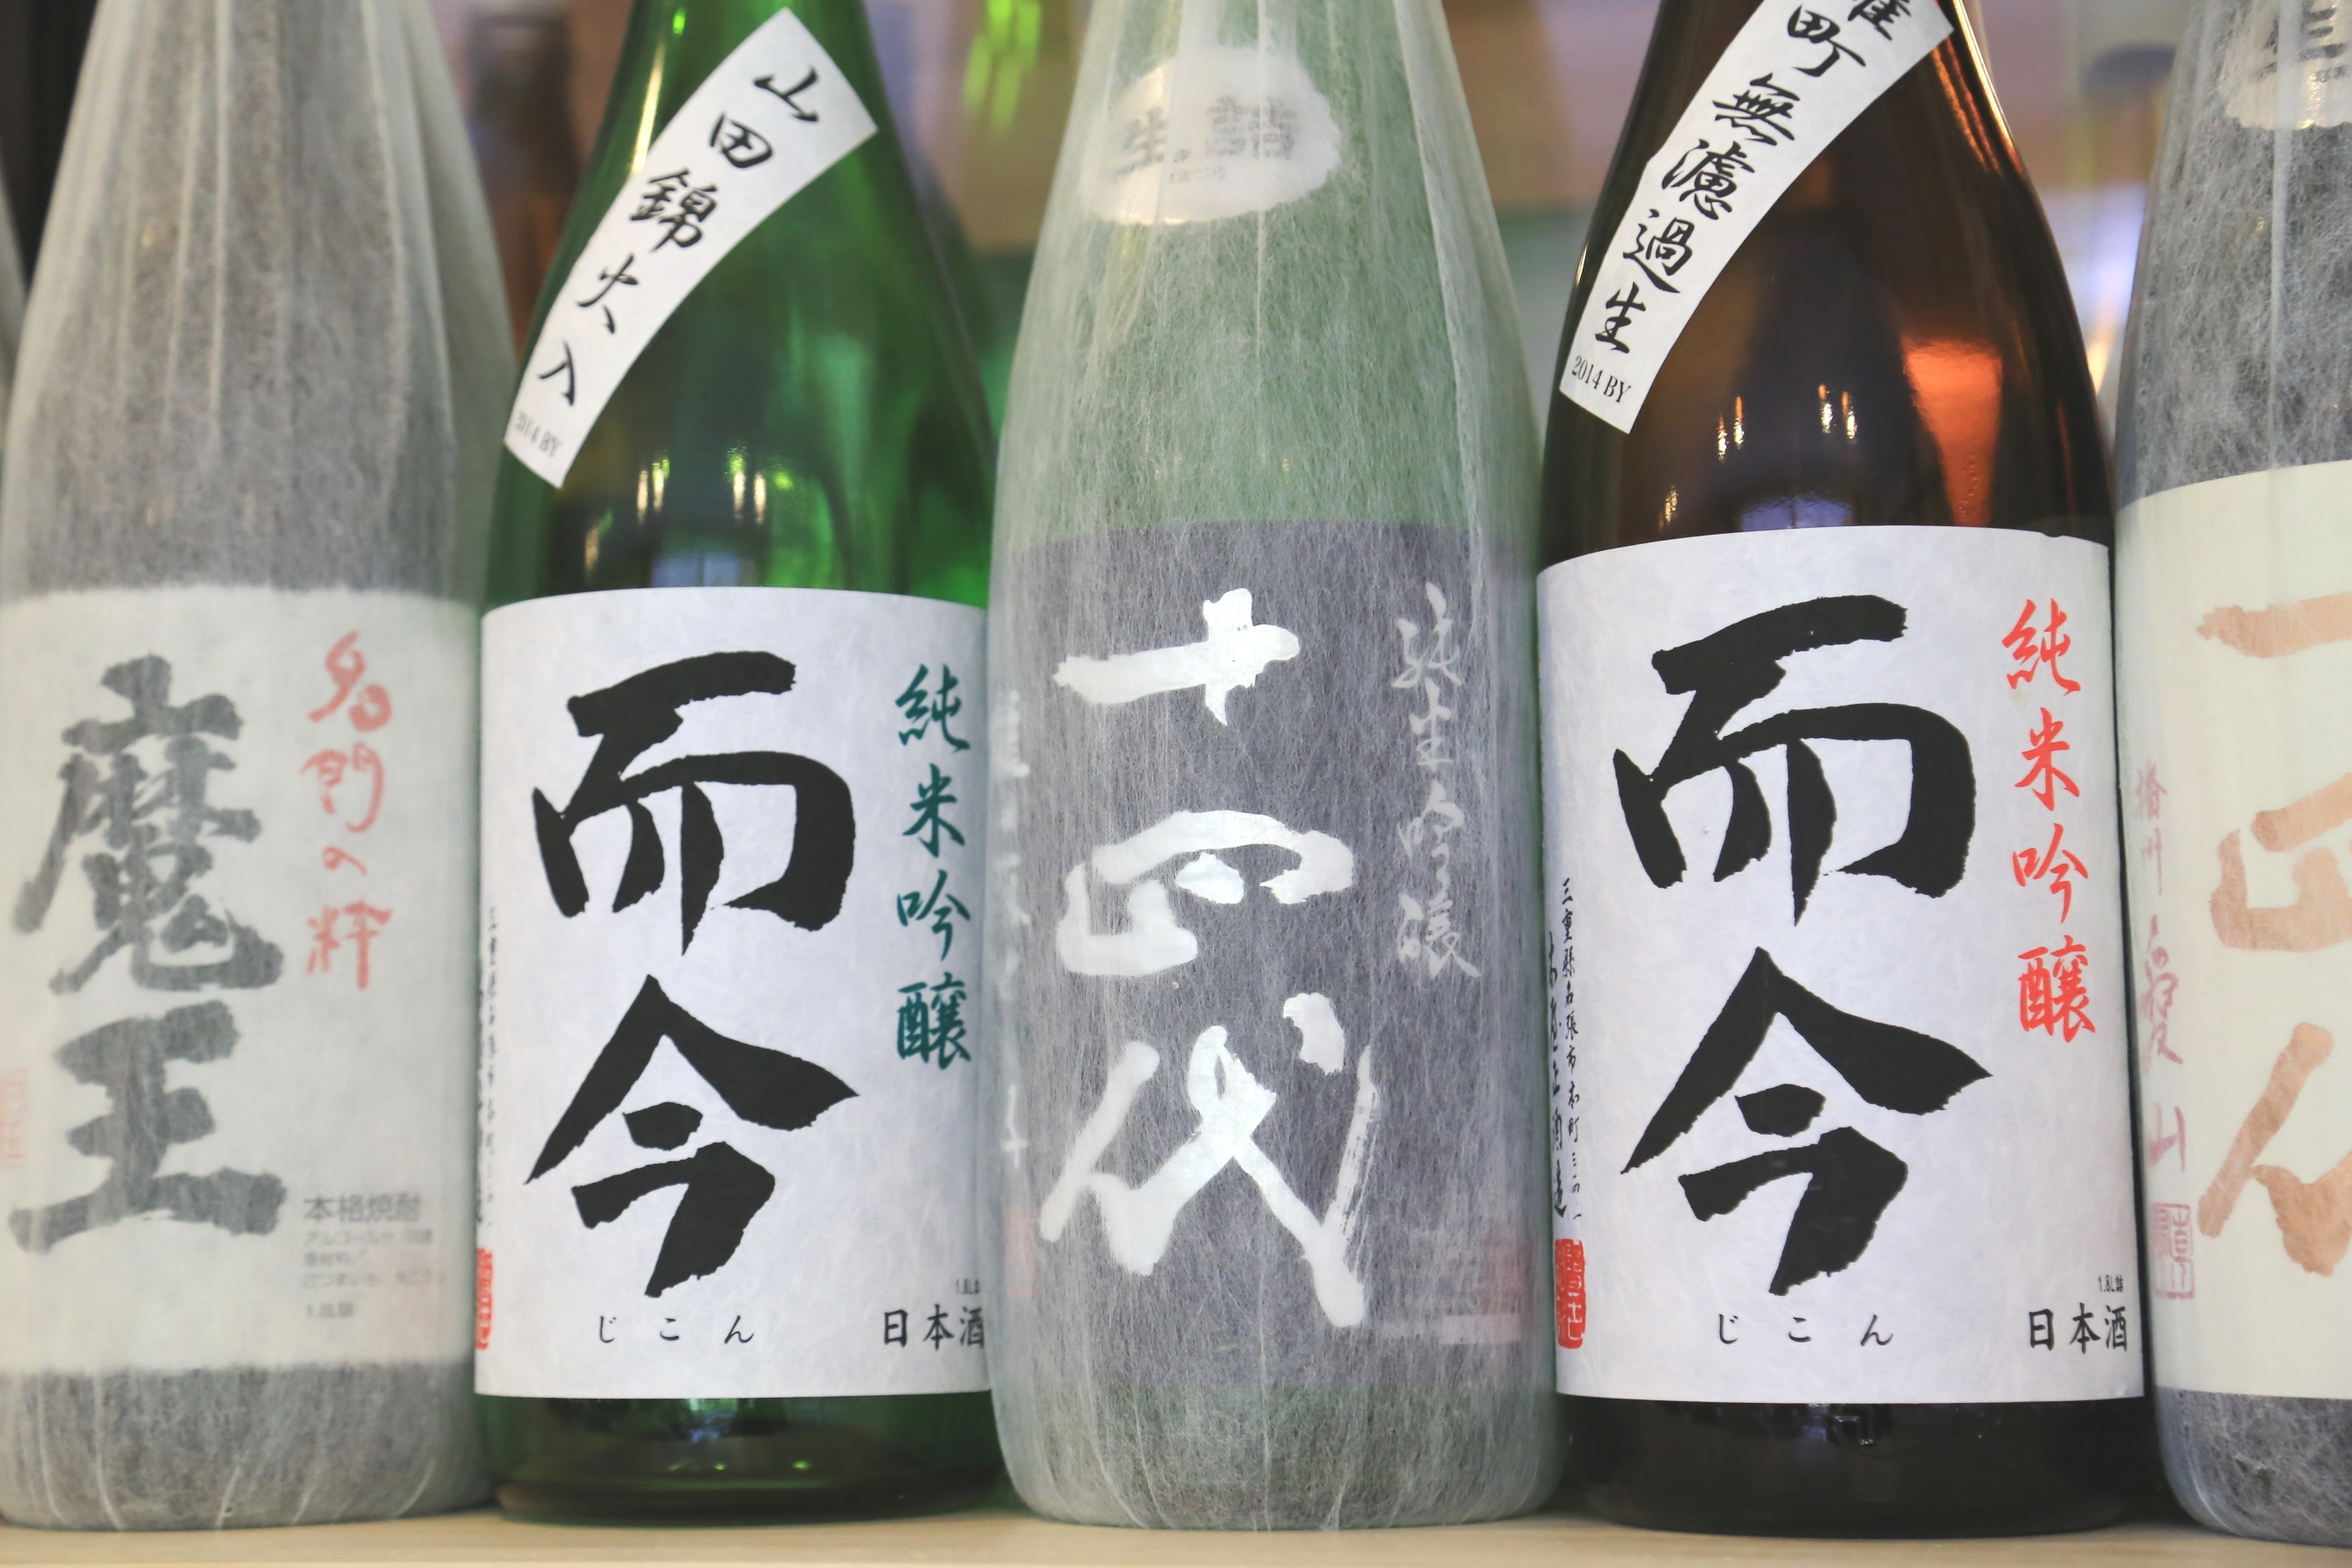 入手困難なうまい酒 三重県の日本酒「而今」 (2016年5月13日